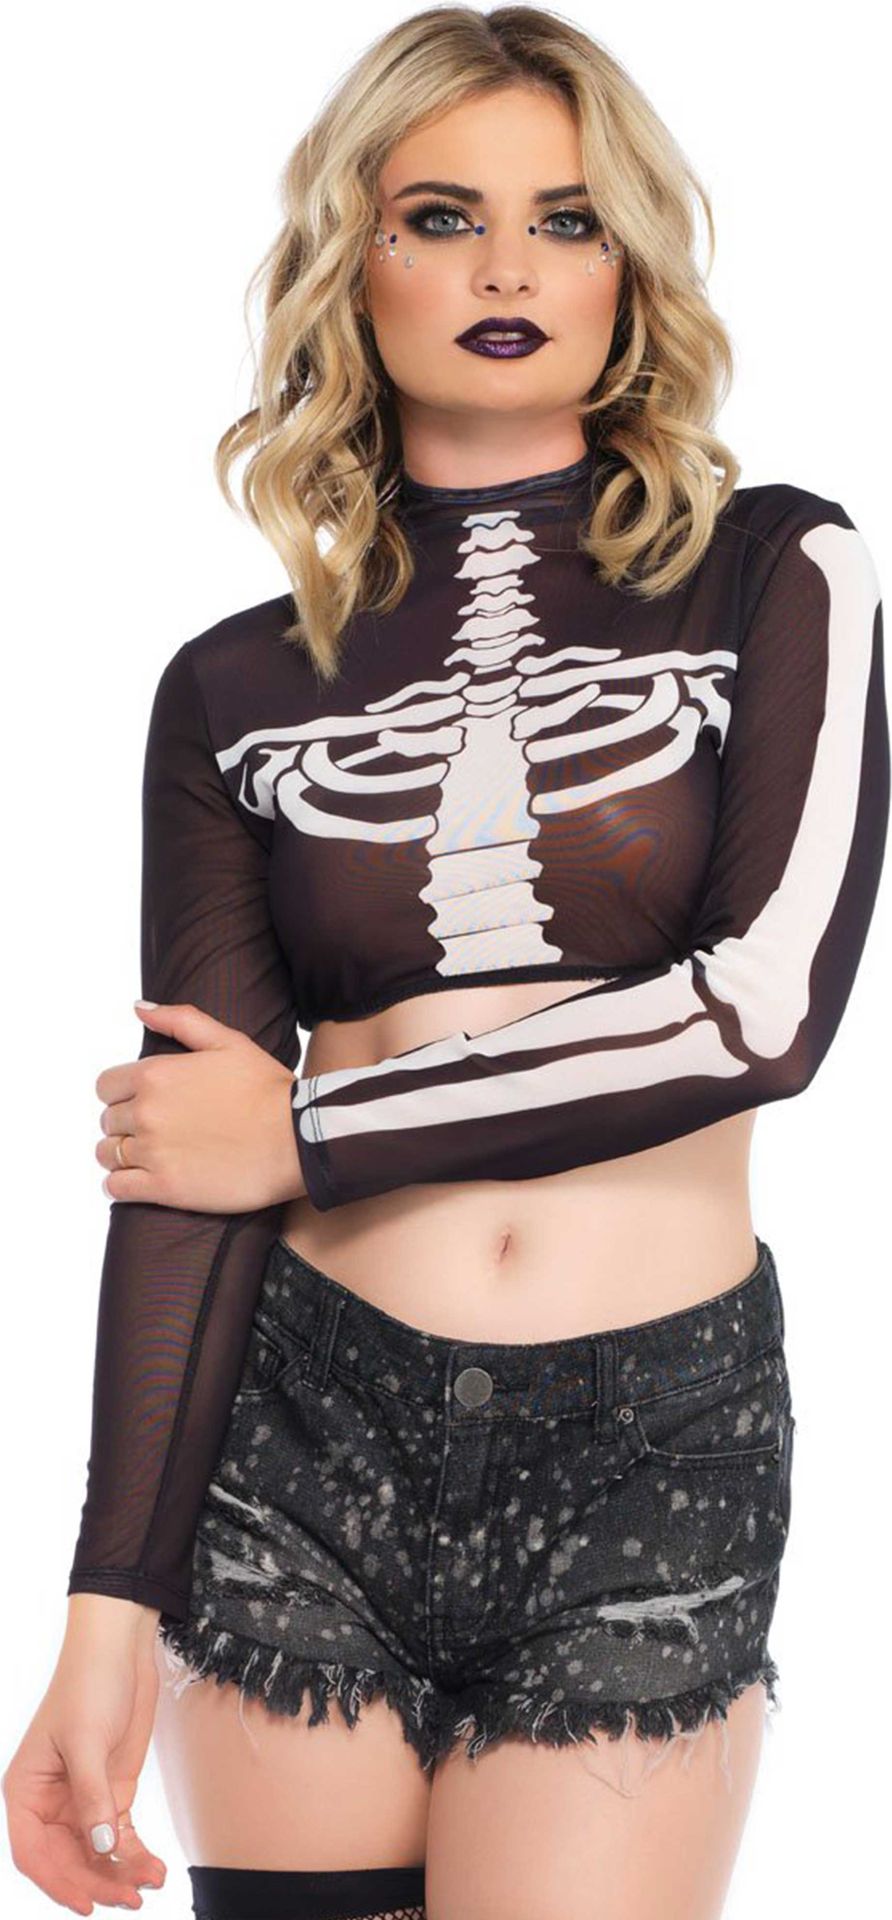 Kort hemdje skelet